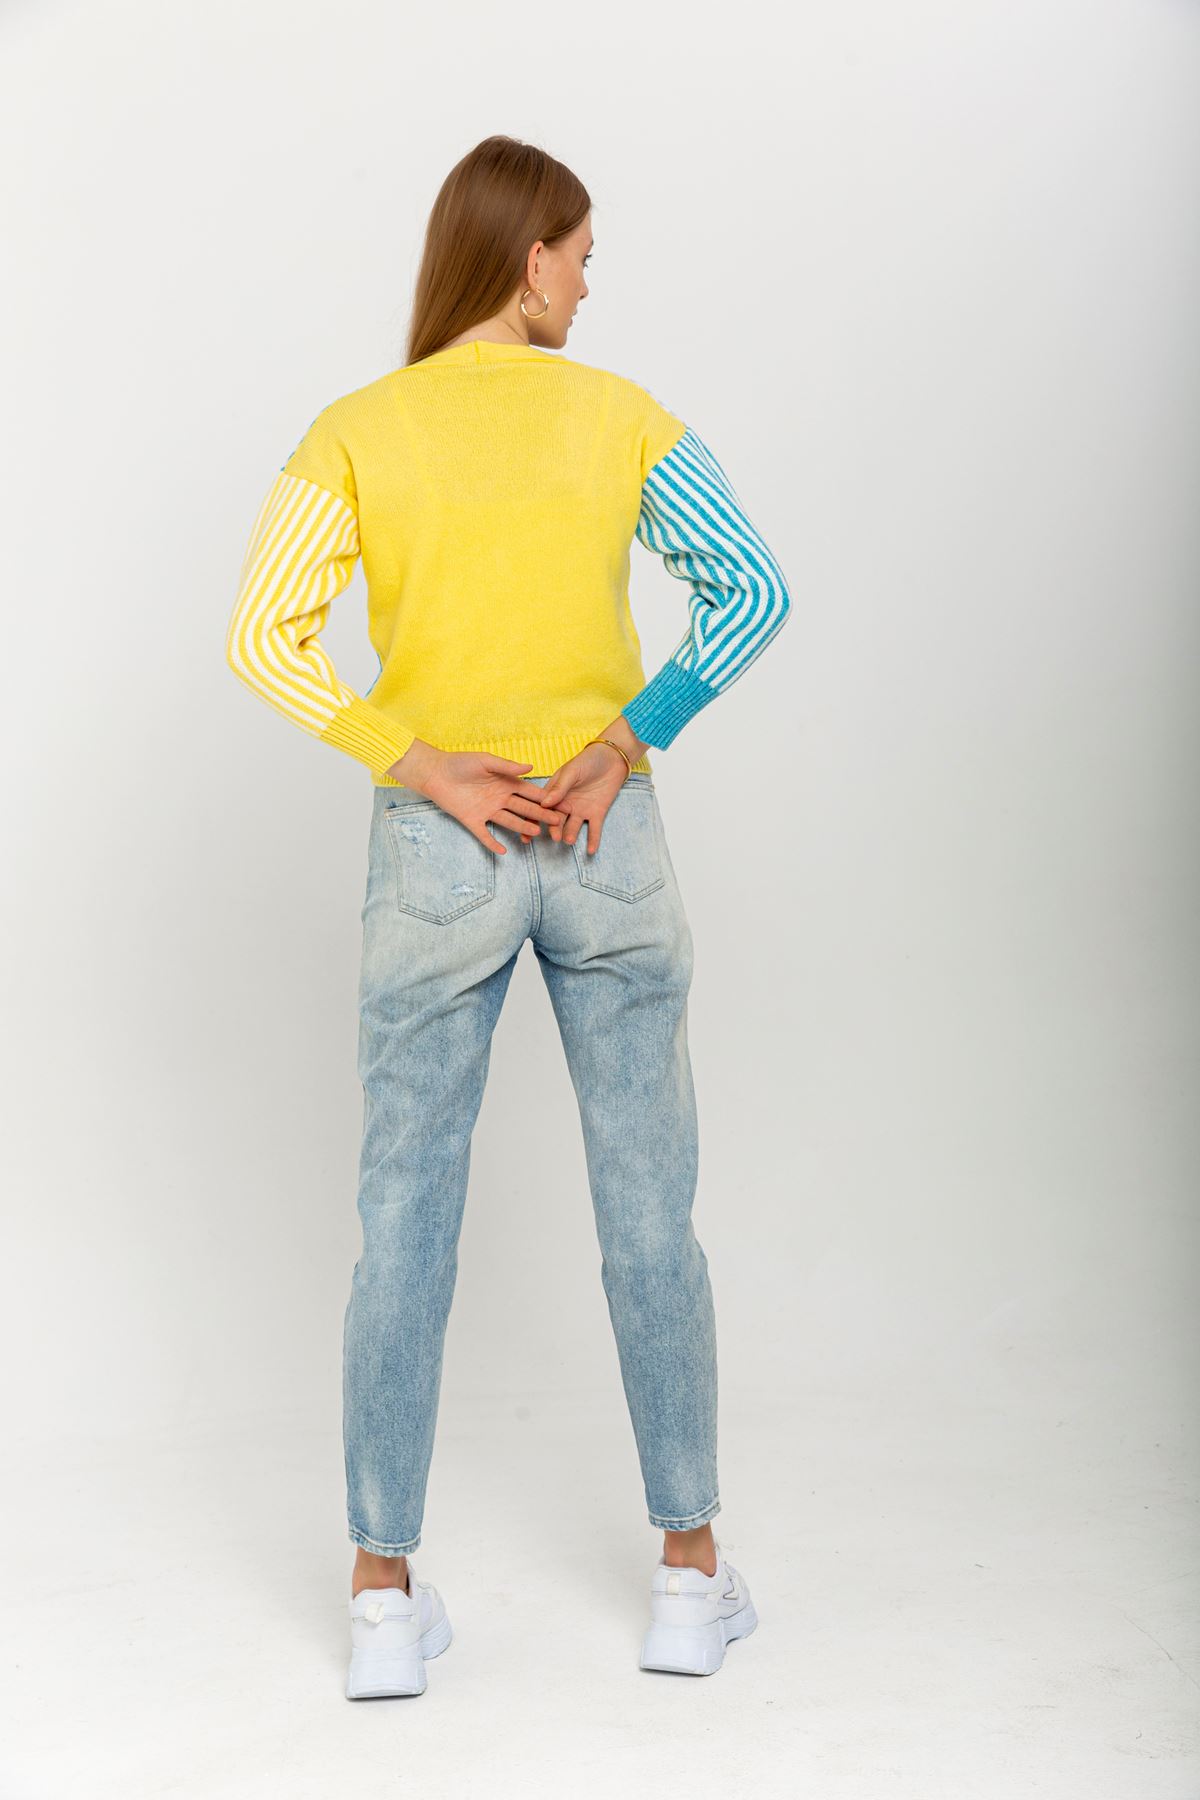 Triko Kumaş Uzun Kol V Yaka Kısa Boy Çizgili Kadın Hırka-Sarı